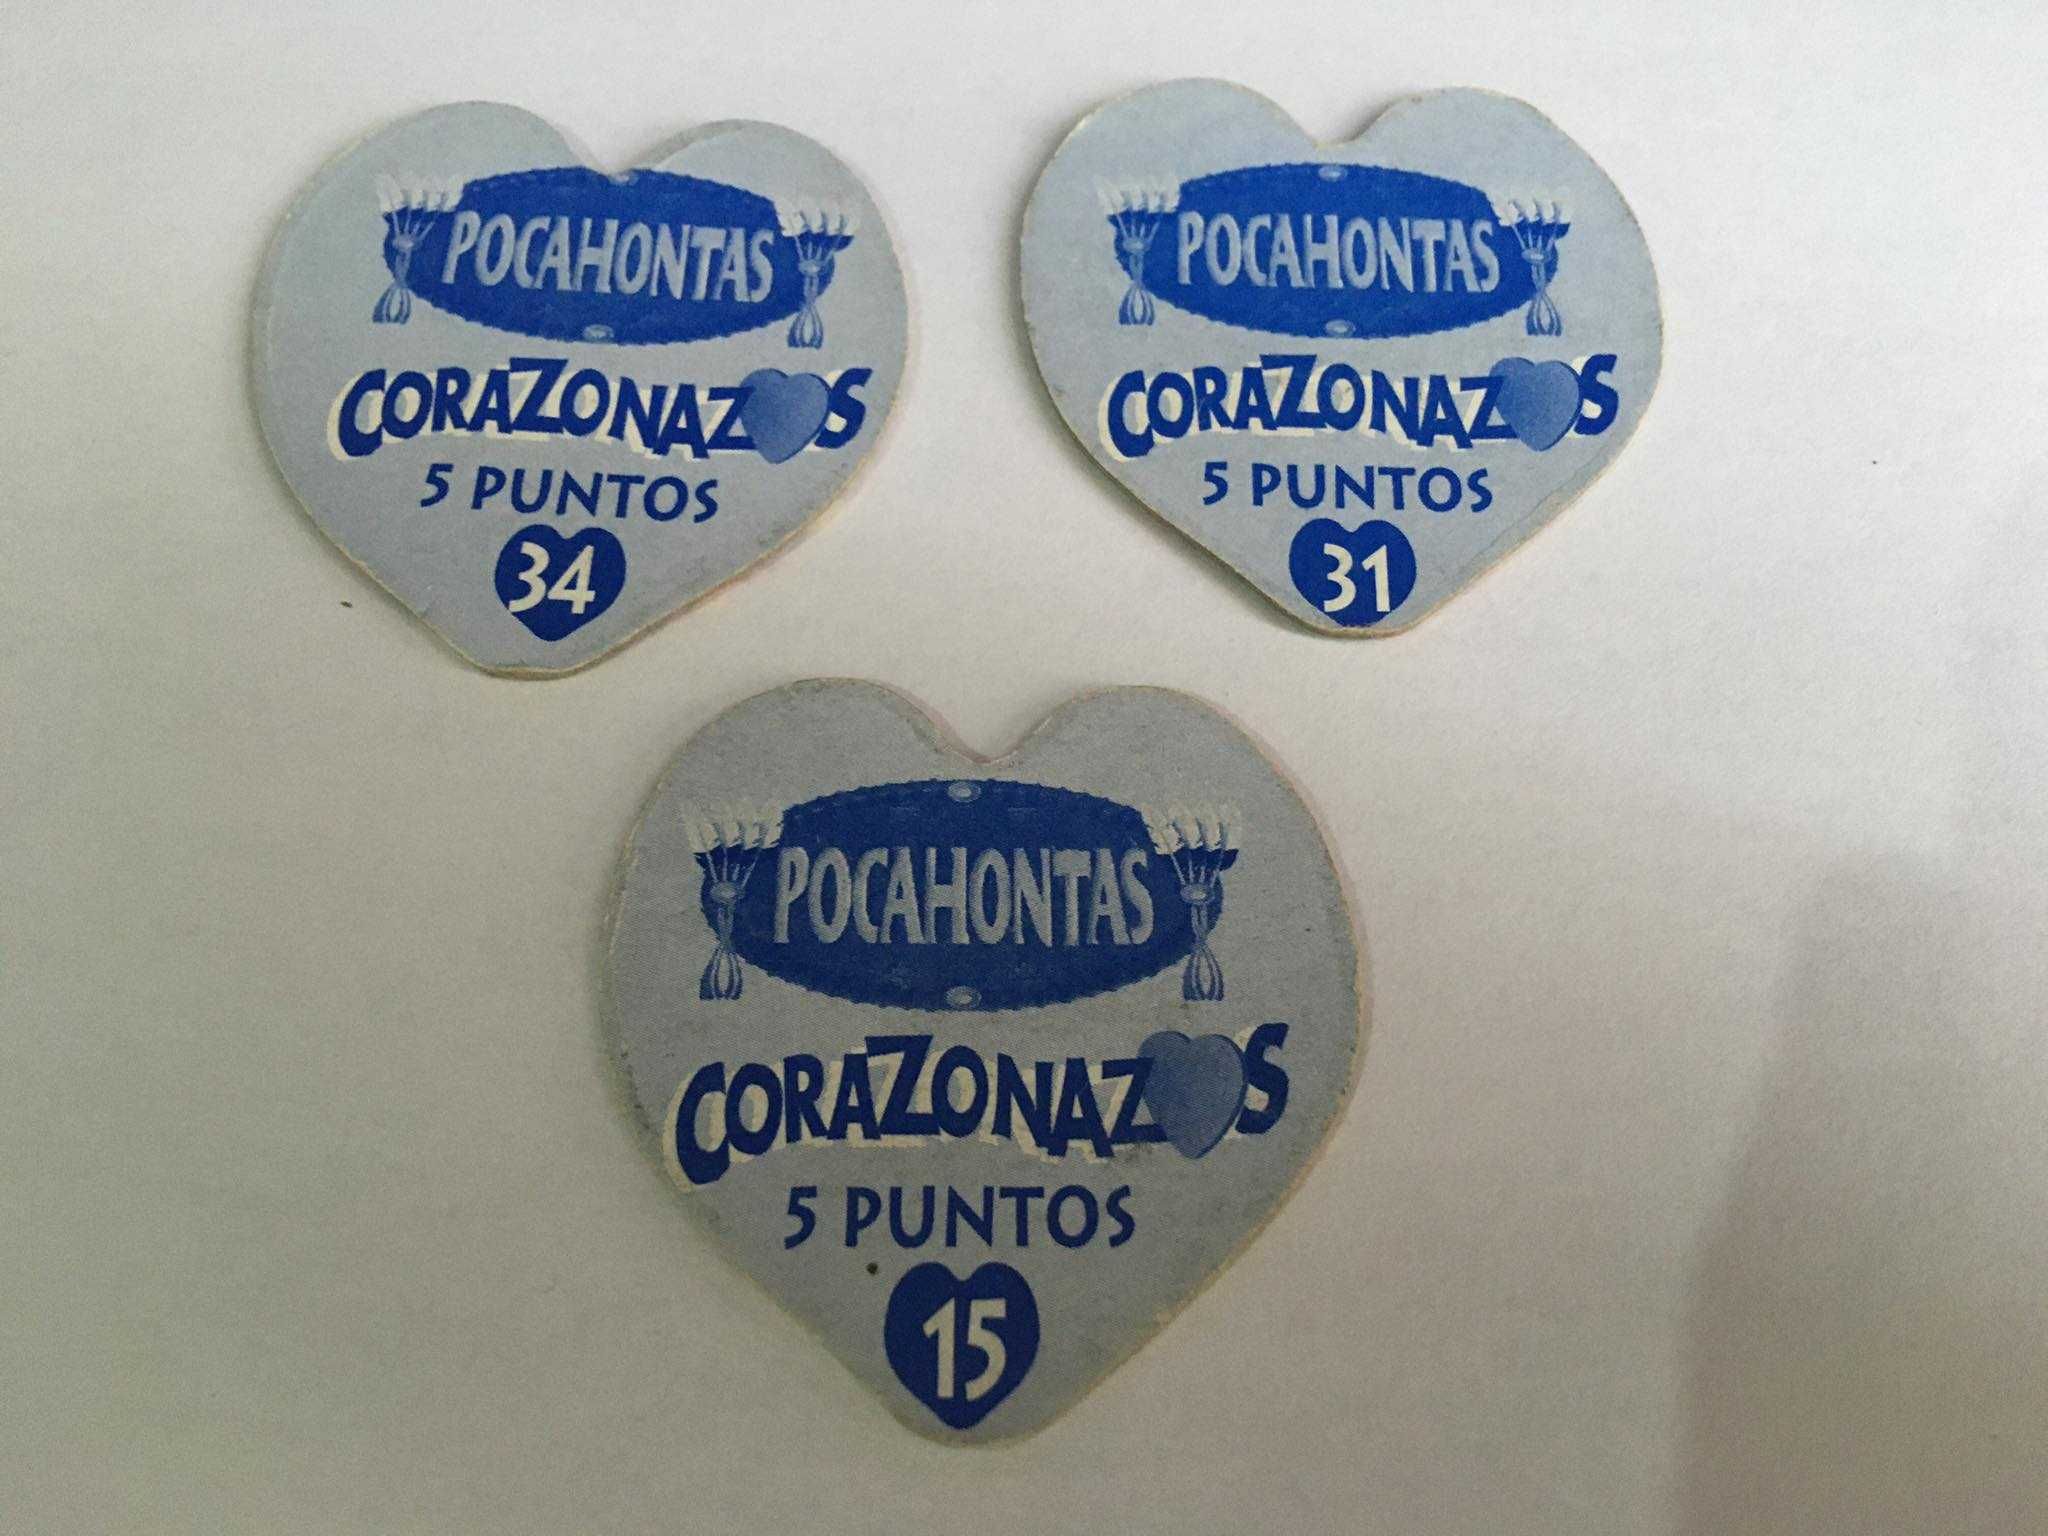 Tazos Pocahontas Corazonazos